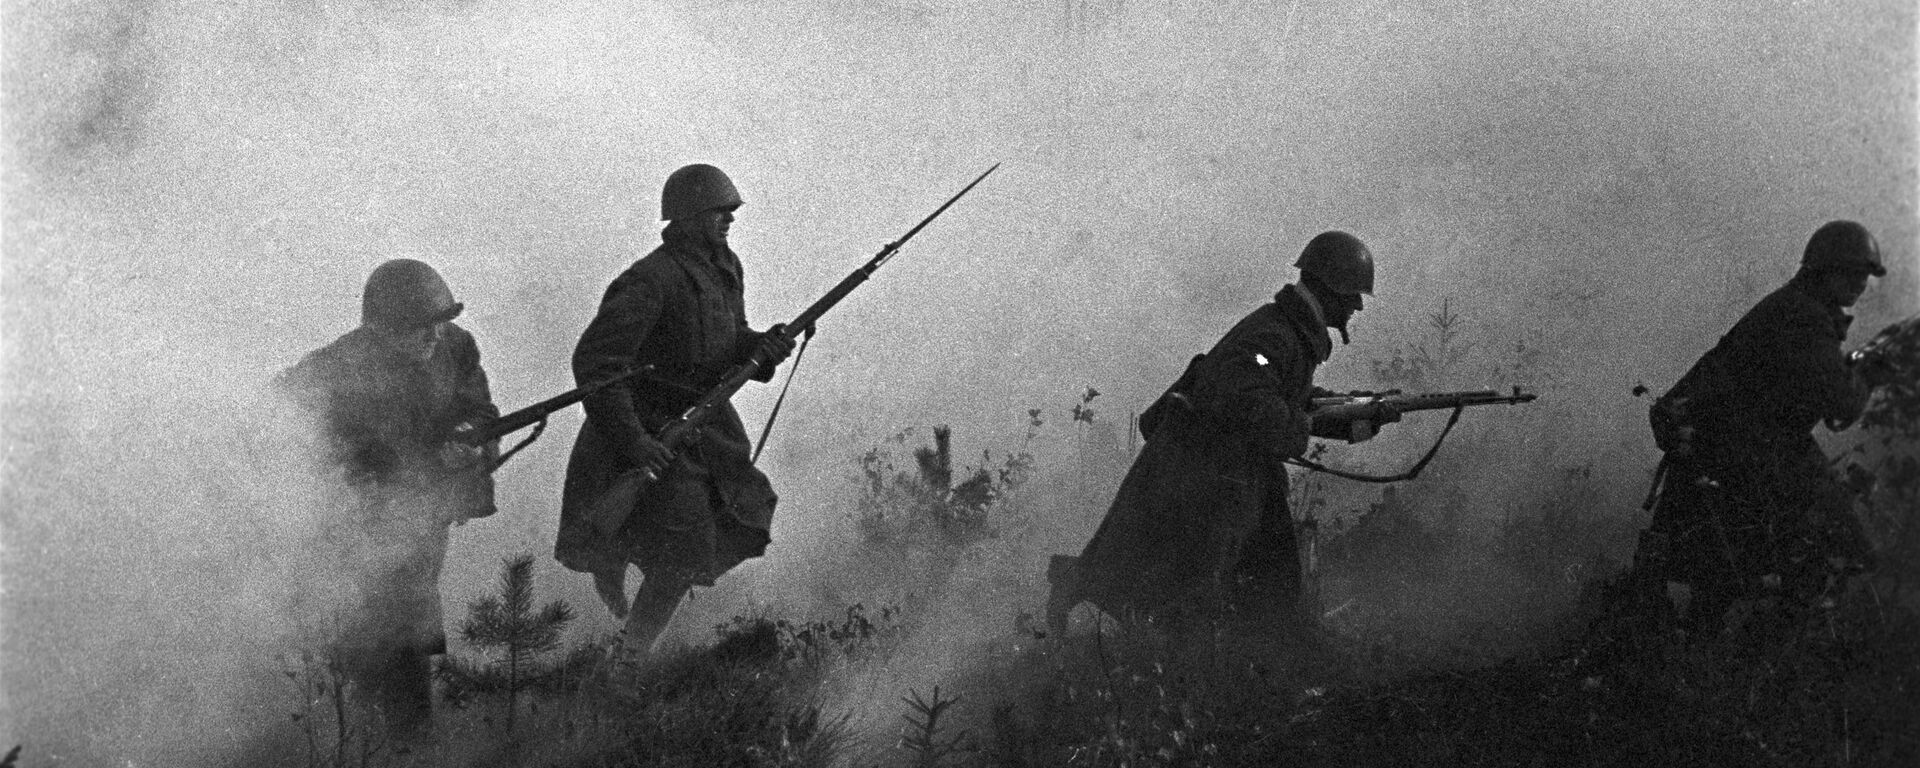 Великая Отечественная война. - Sputnik Абхазия, 1920, 27.04.2021